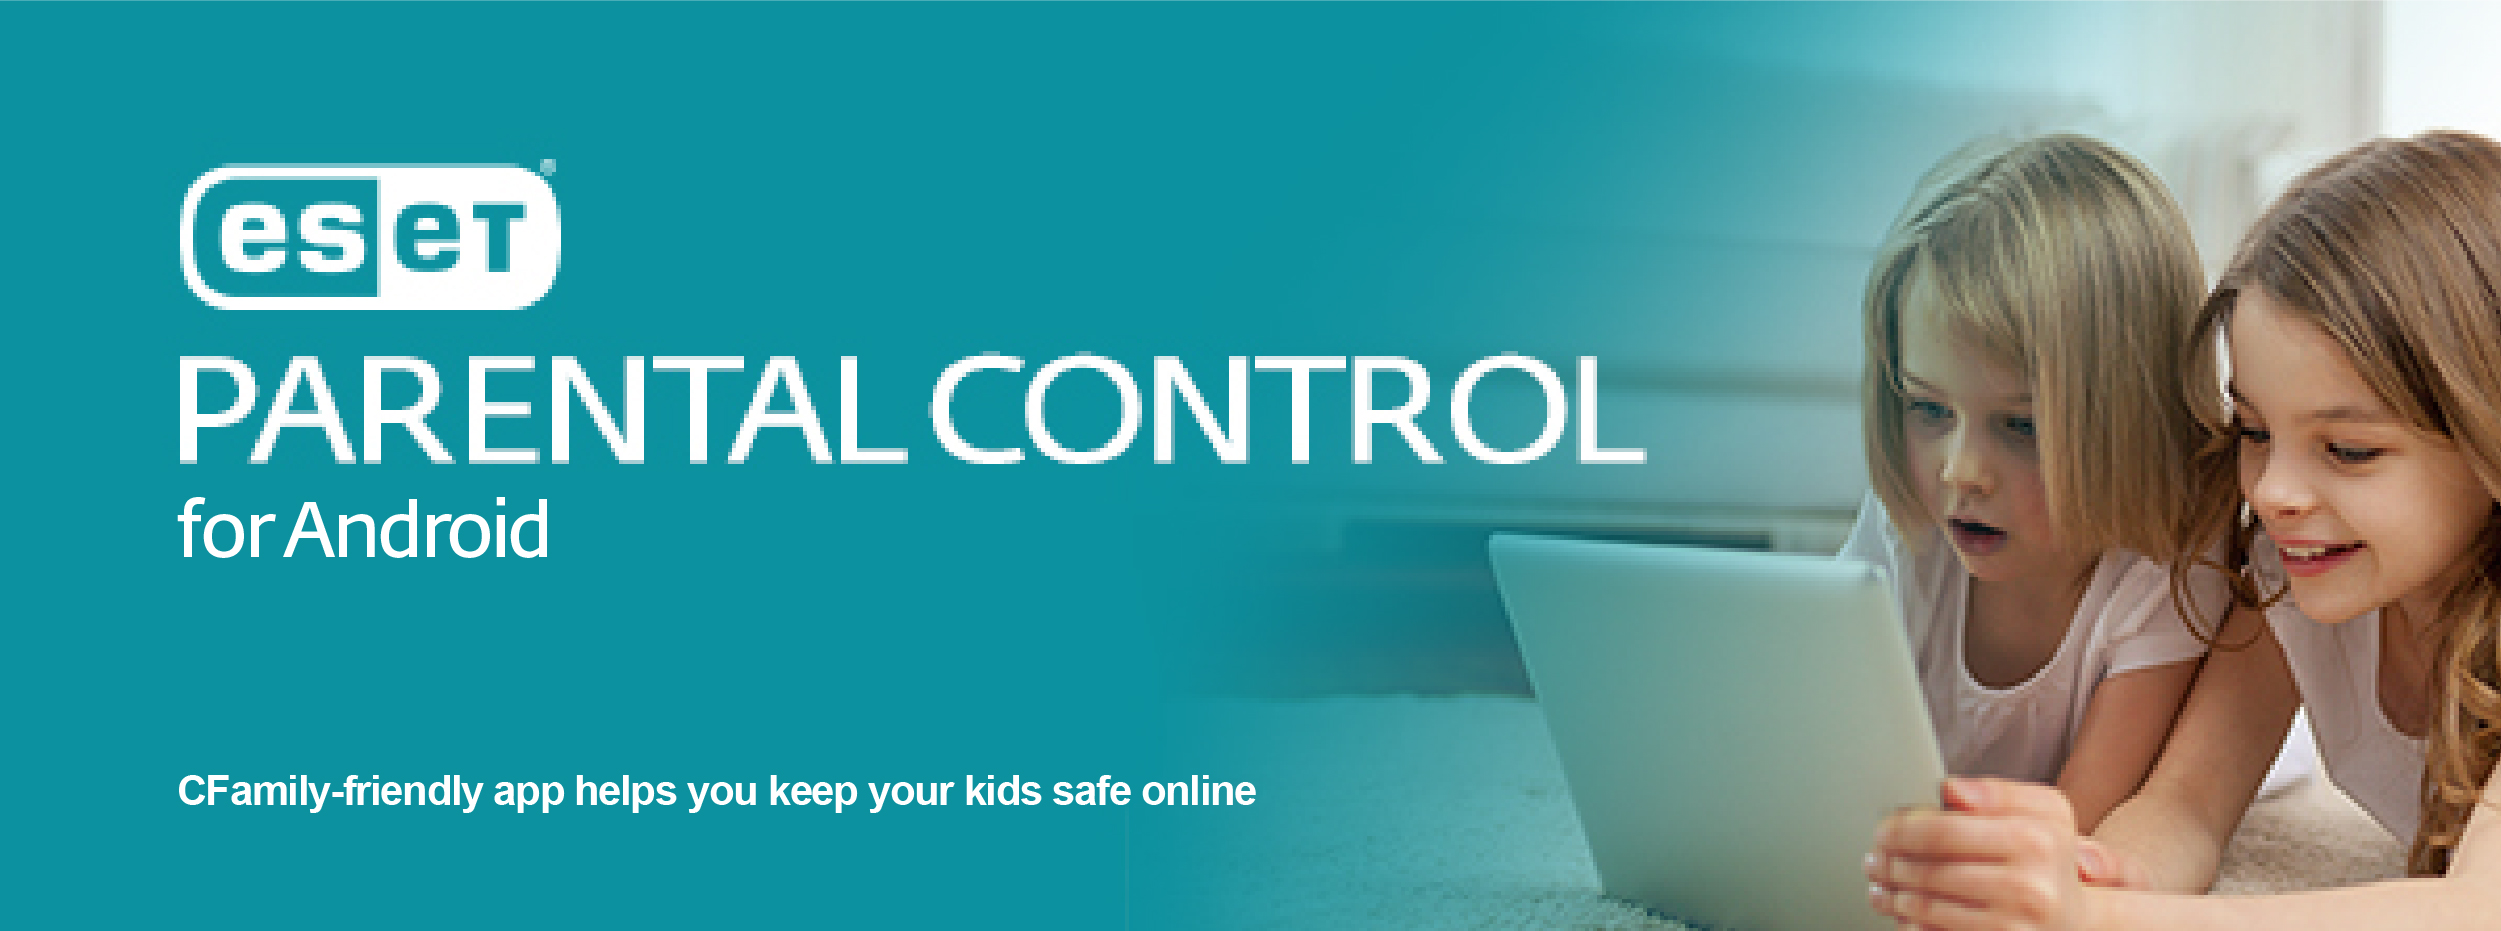 ESET Parental Control for Android - ESET estore